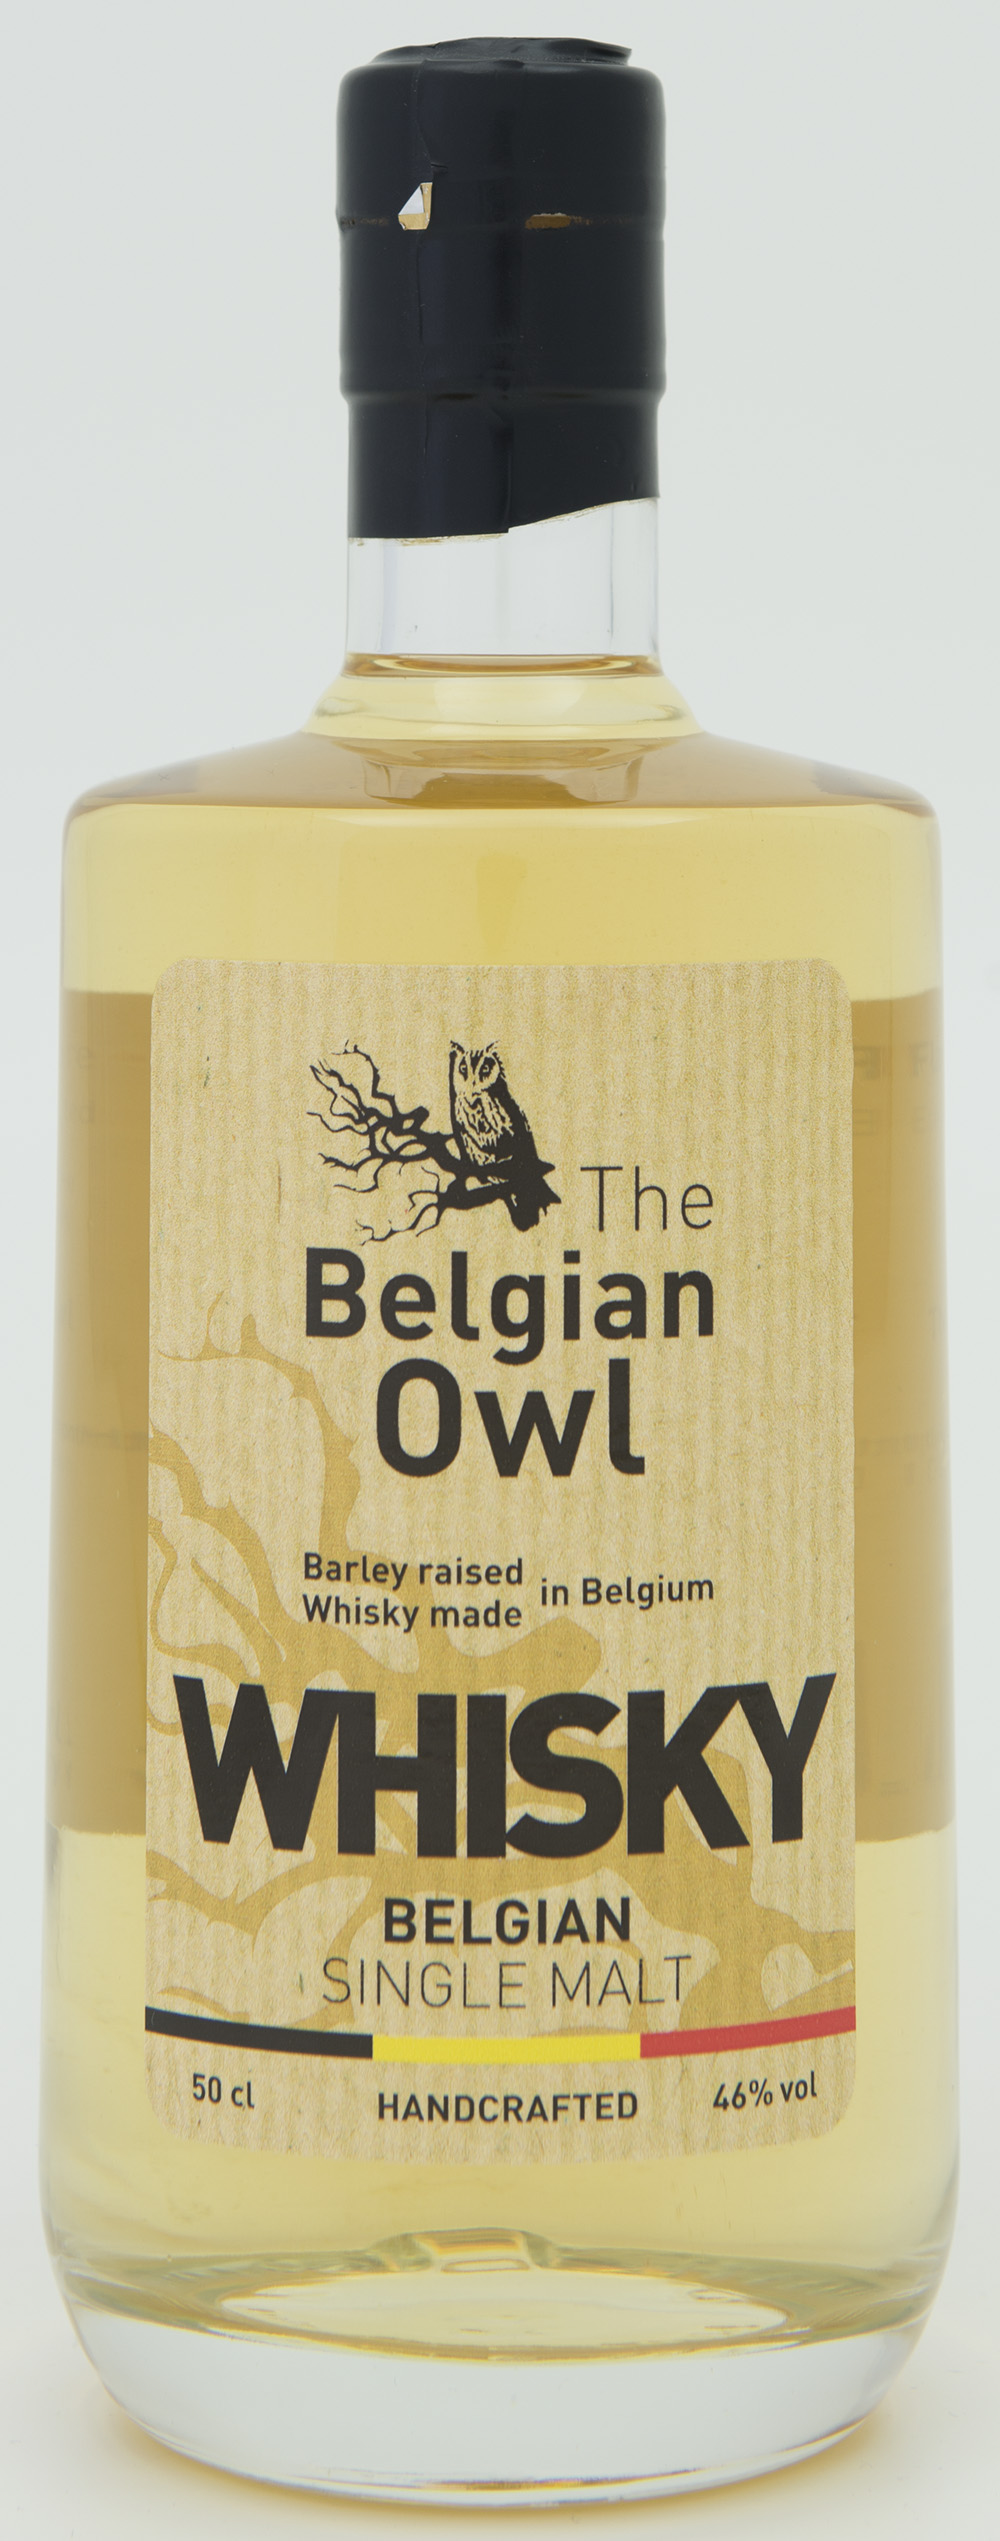 Billede: DSC_0755 - The Belgian Owl - bottle front.jpg